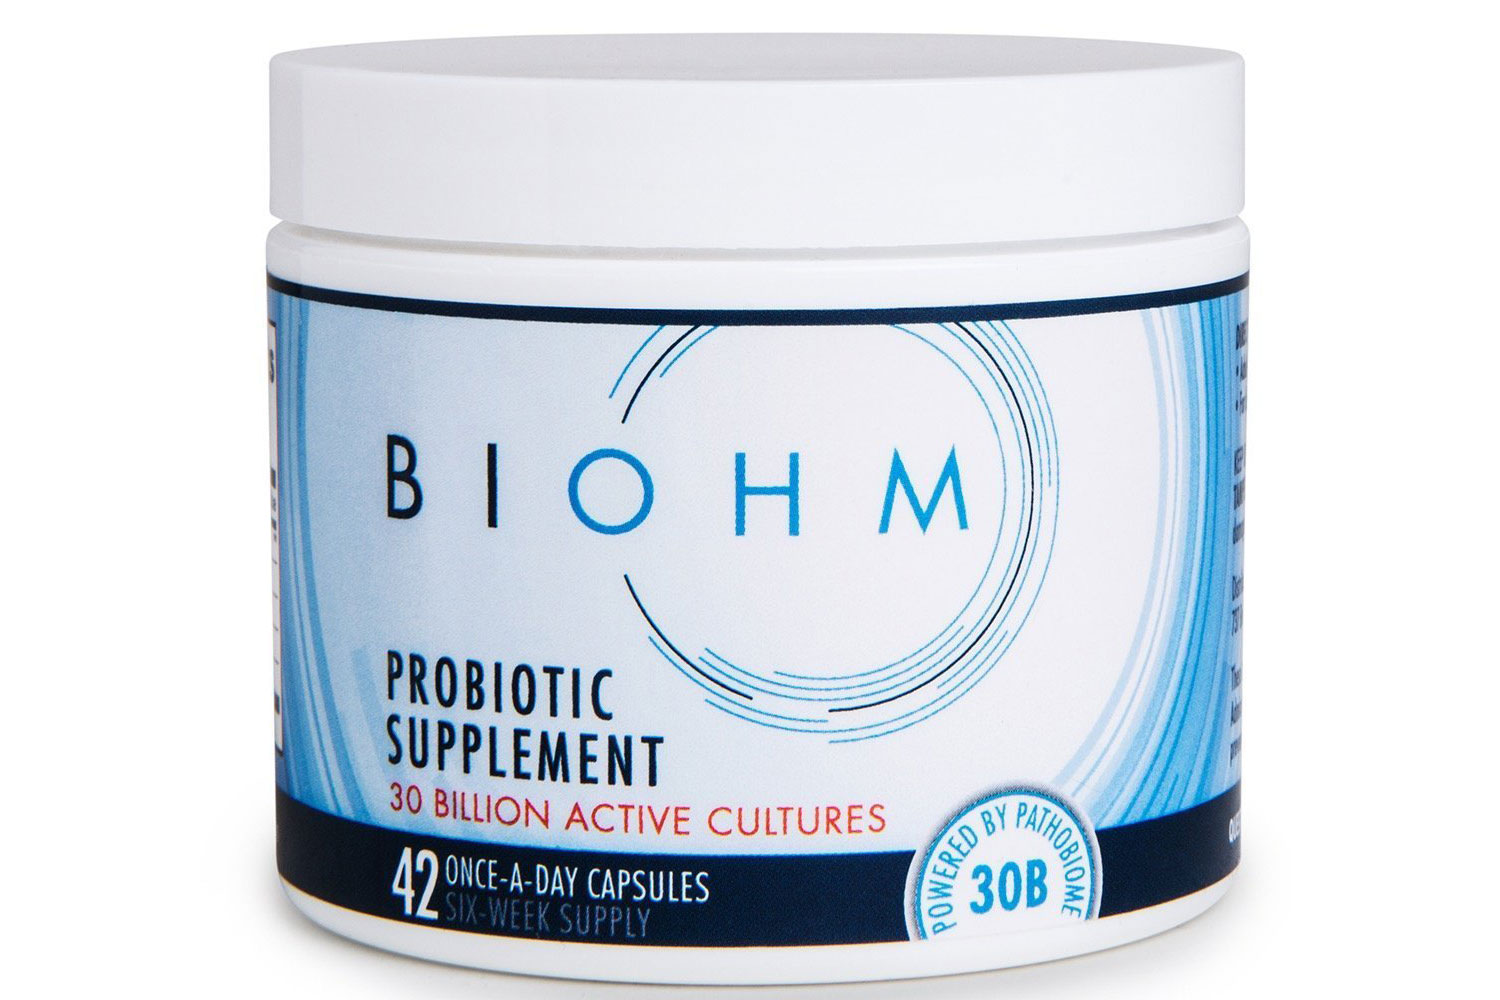 Biohm Probiotic